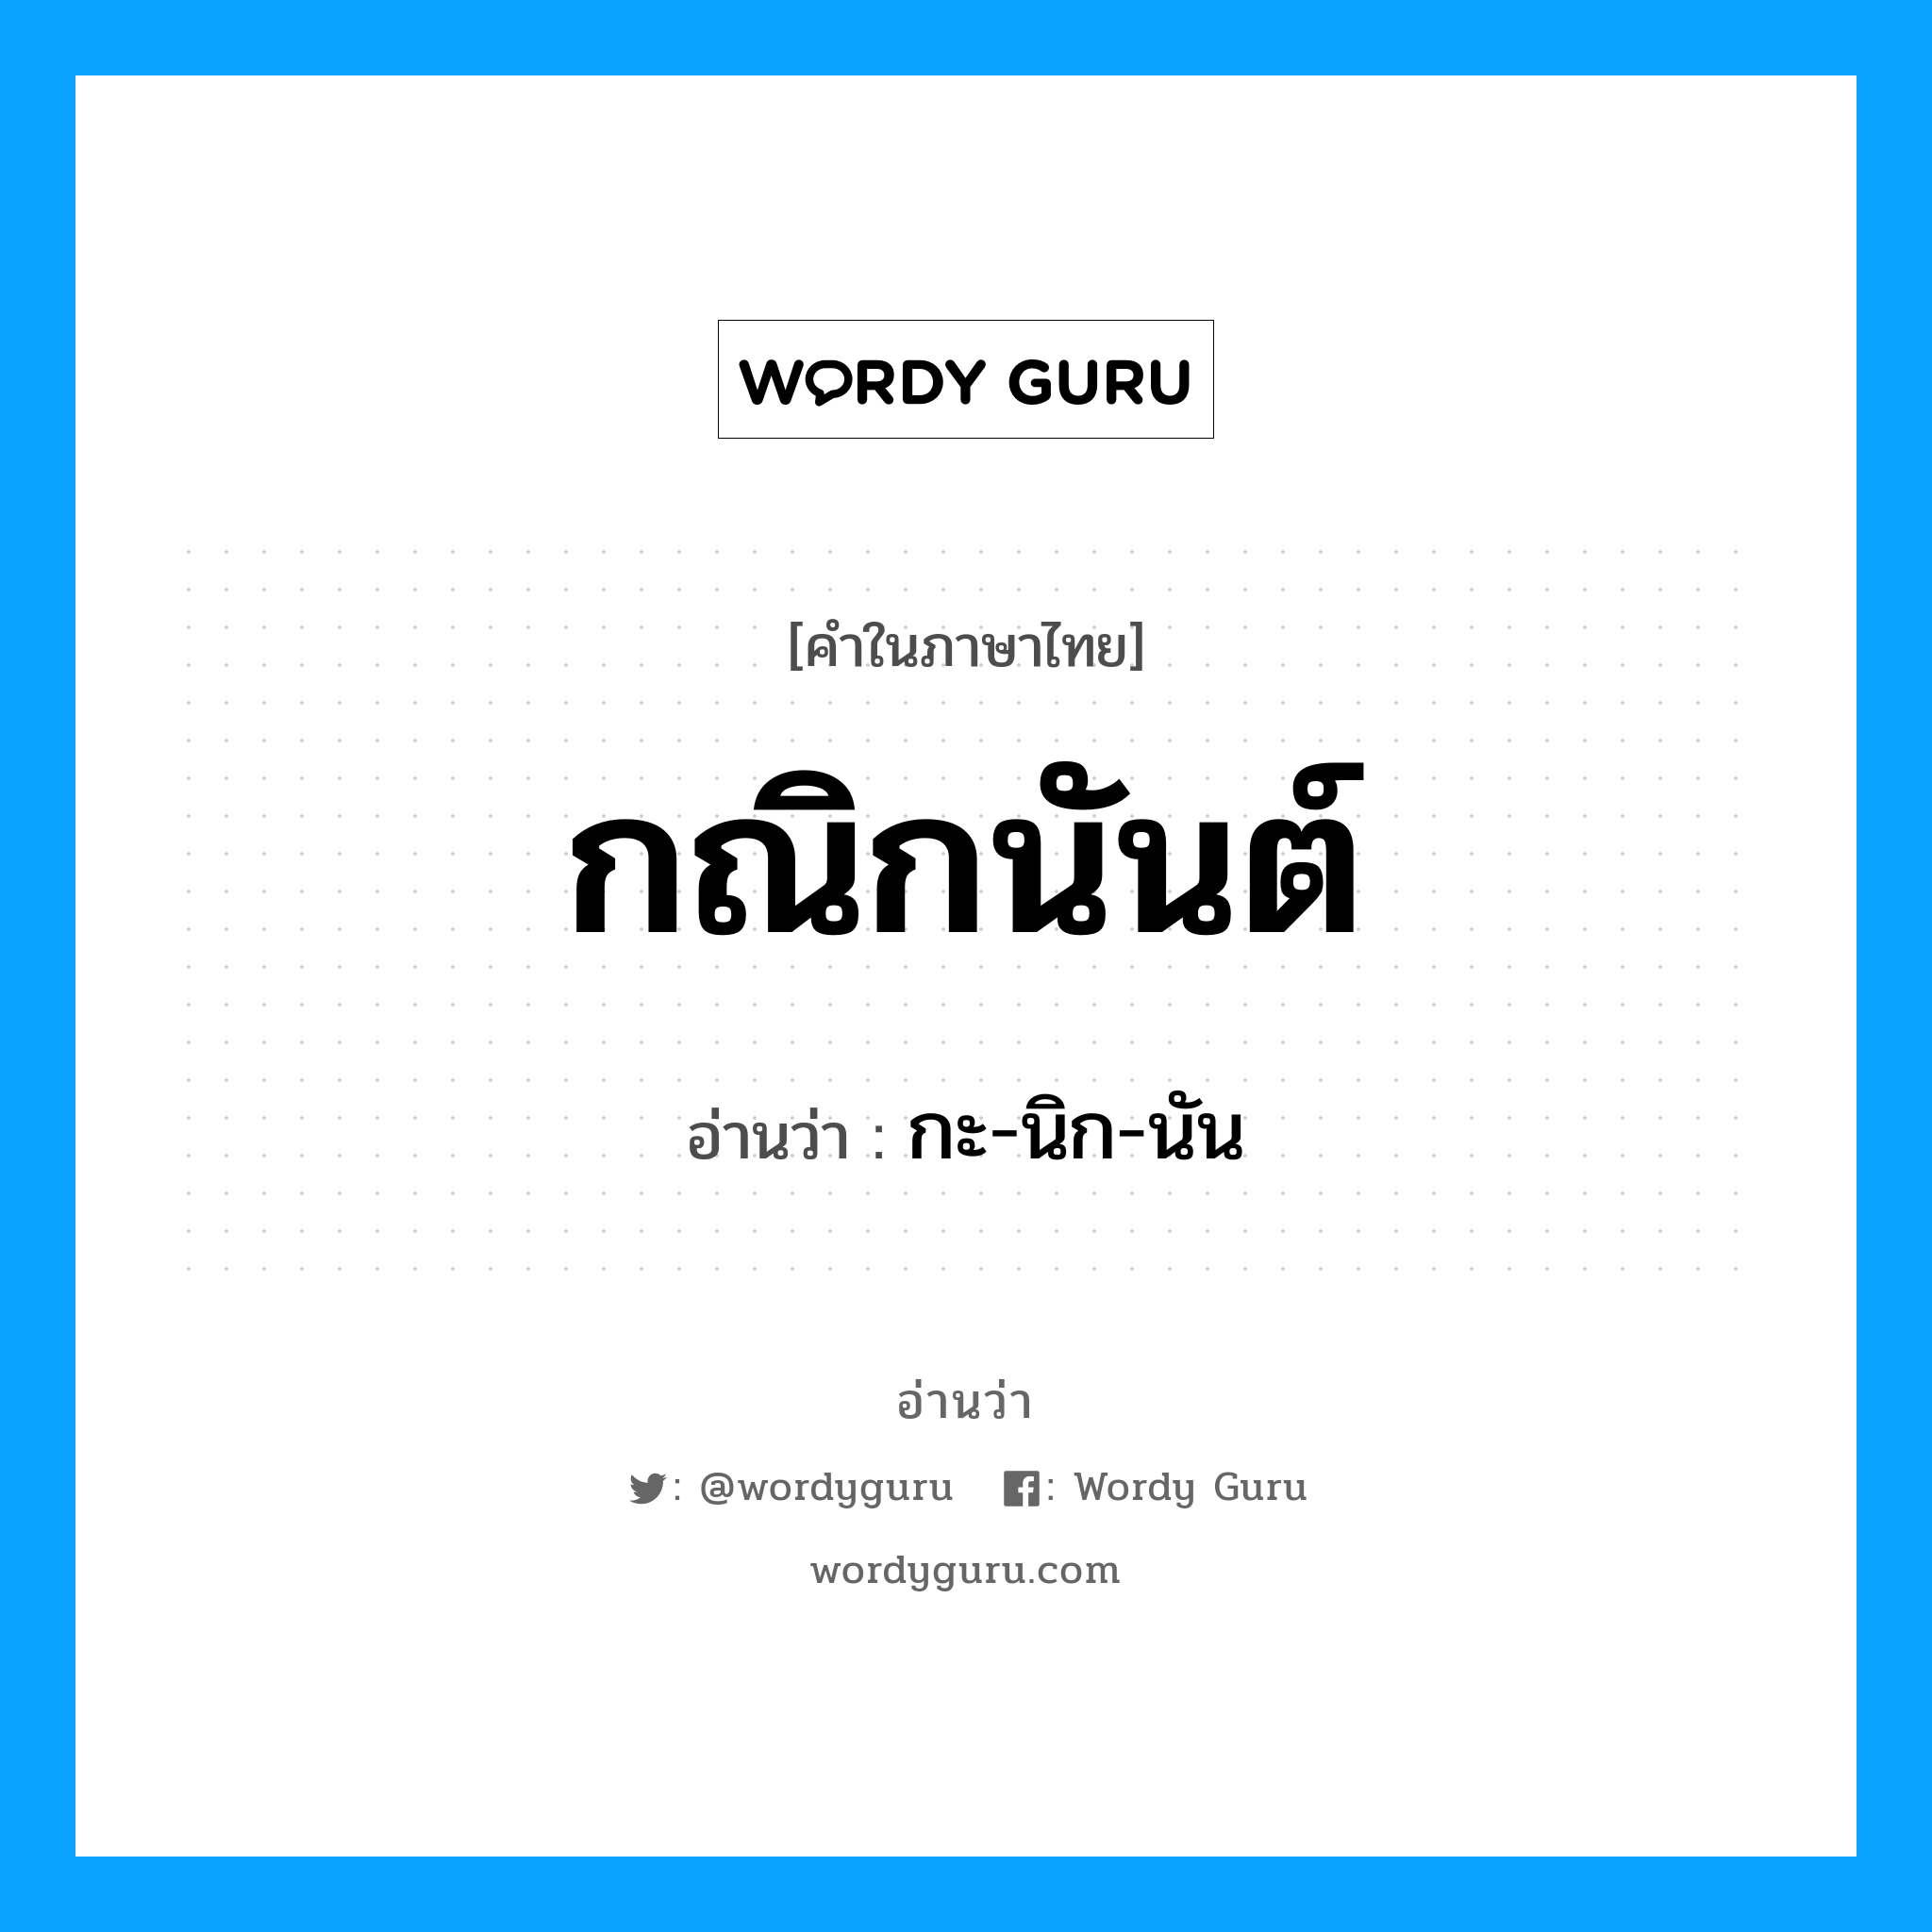 กะ-นิก-นัน เป็นคำอ่านของคำไหน?, คำในภาษาไทย กะ-นิก-นัน อ่านว่า กณิกนันต์